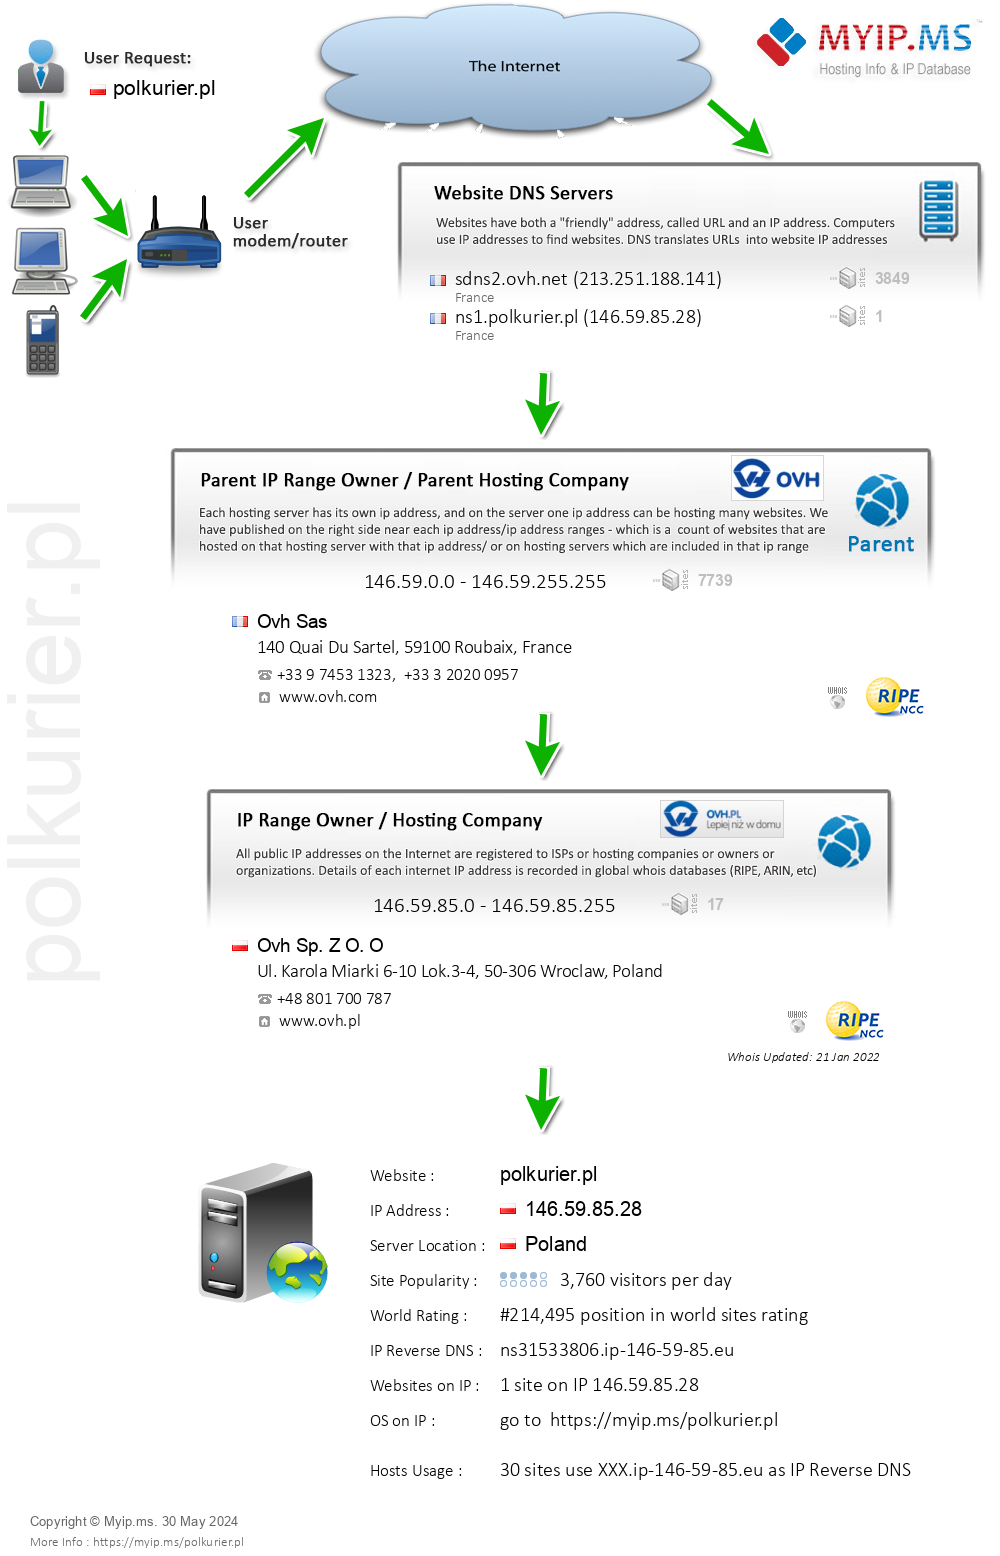 Polkurier.pl - Website Hosting Visual IP Diagram